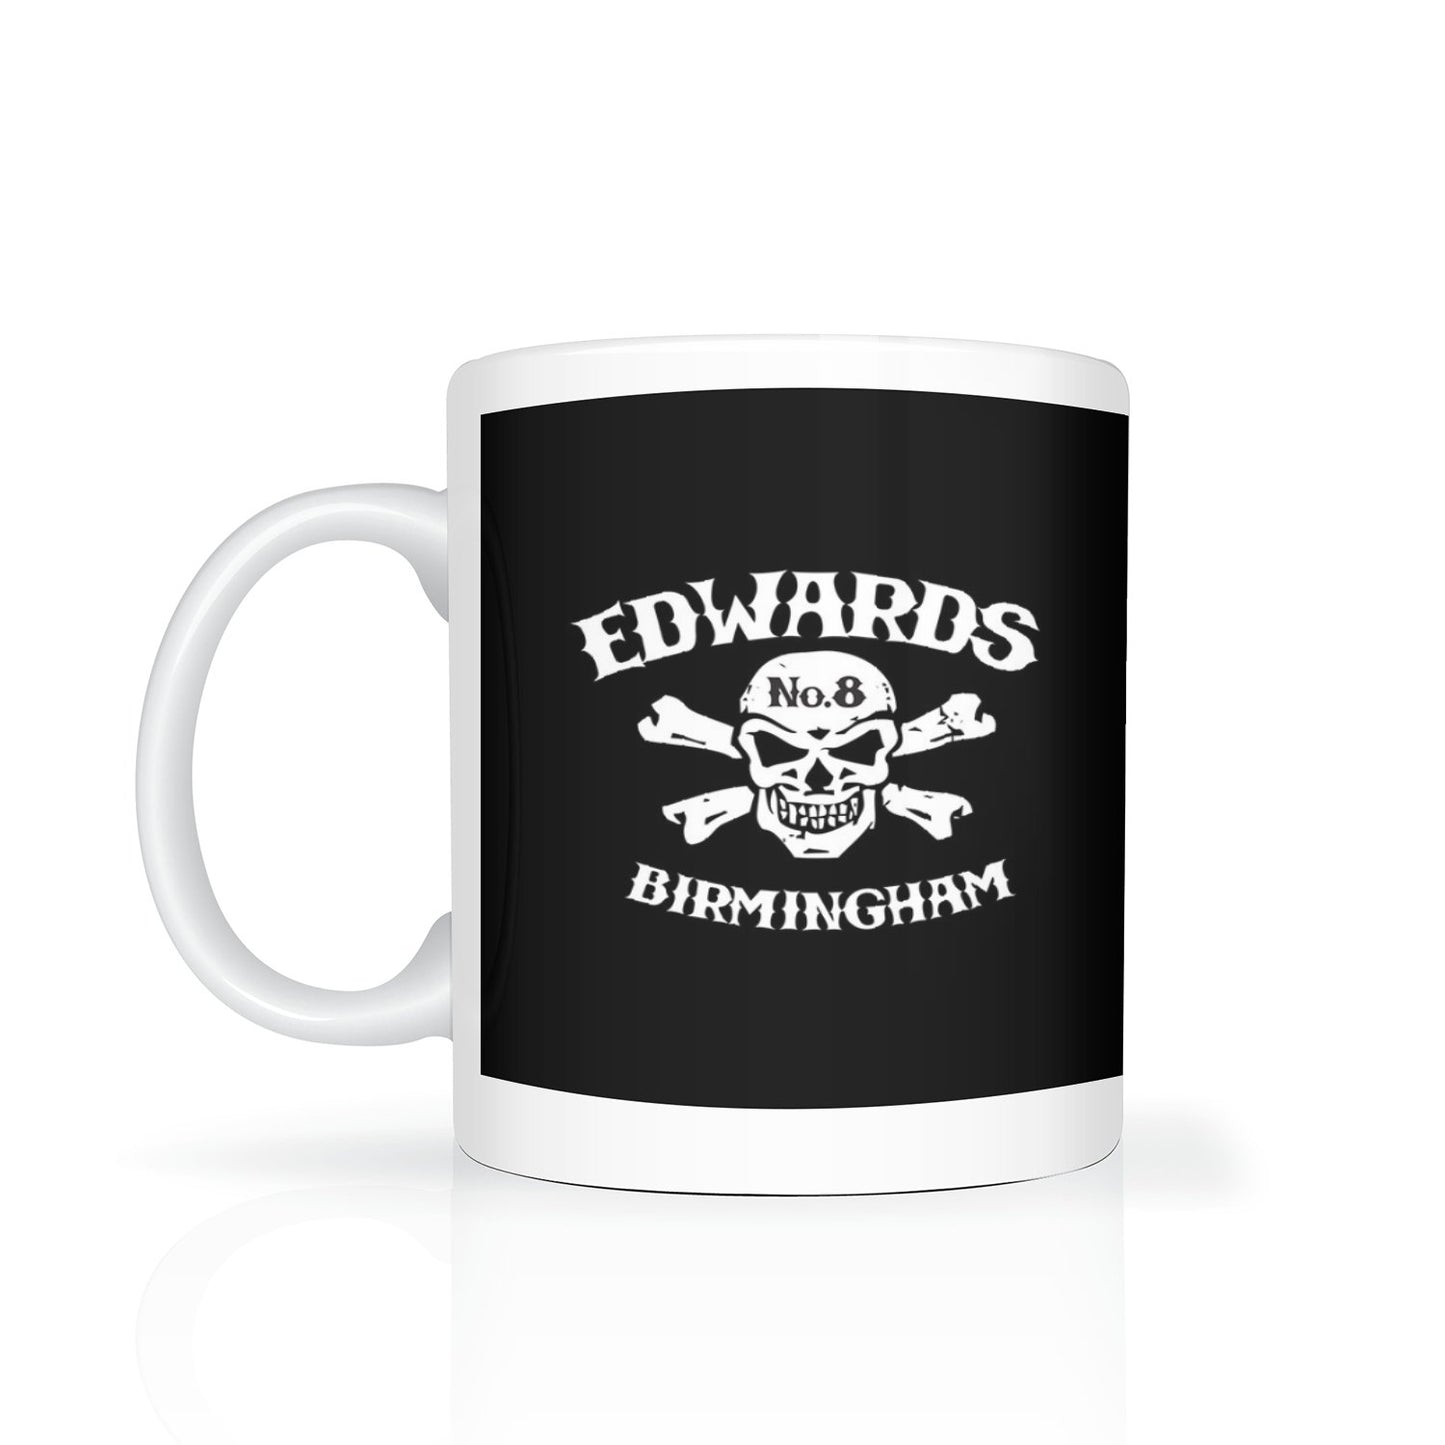 Edwards No. 8 skull/crossbones mug - Dirty Stop Outs